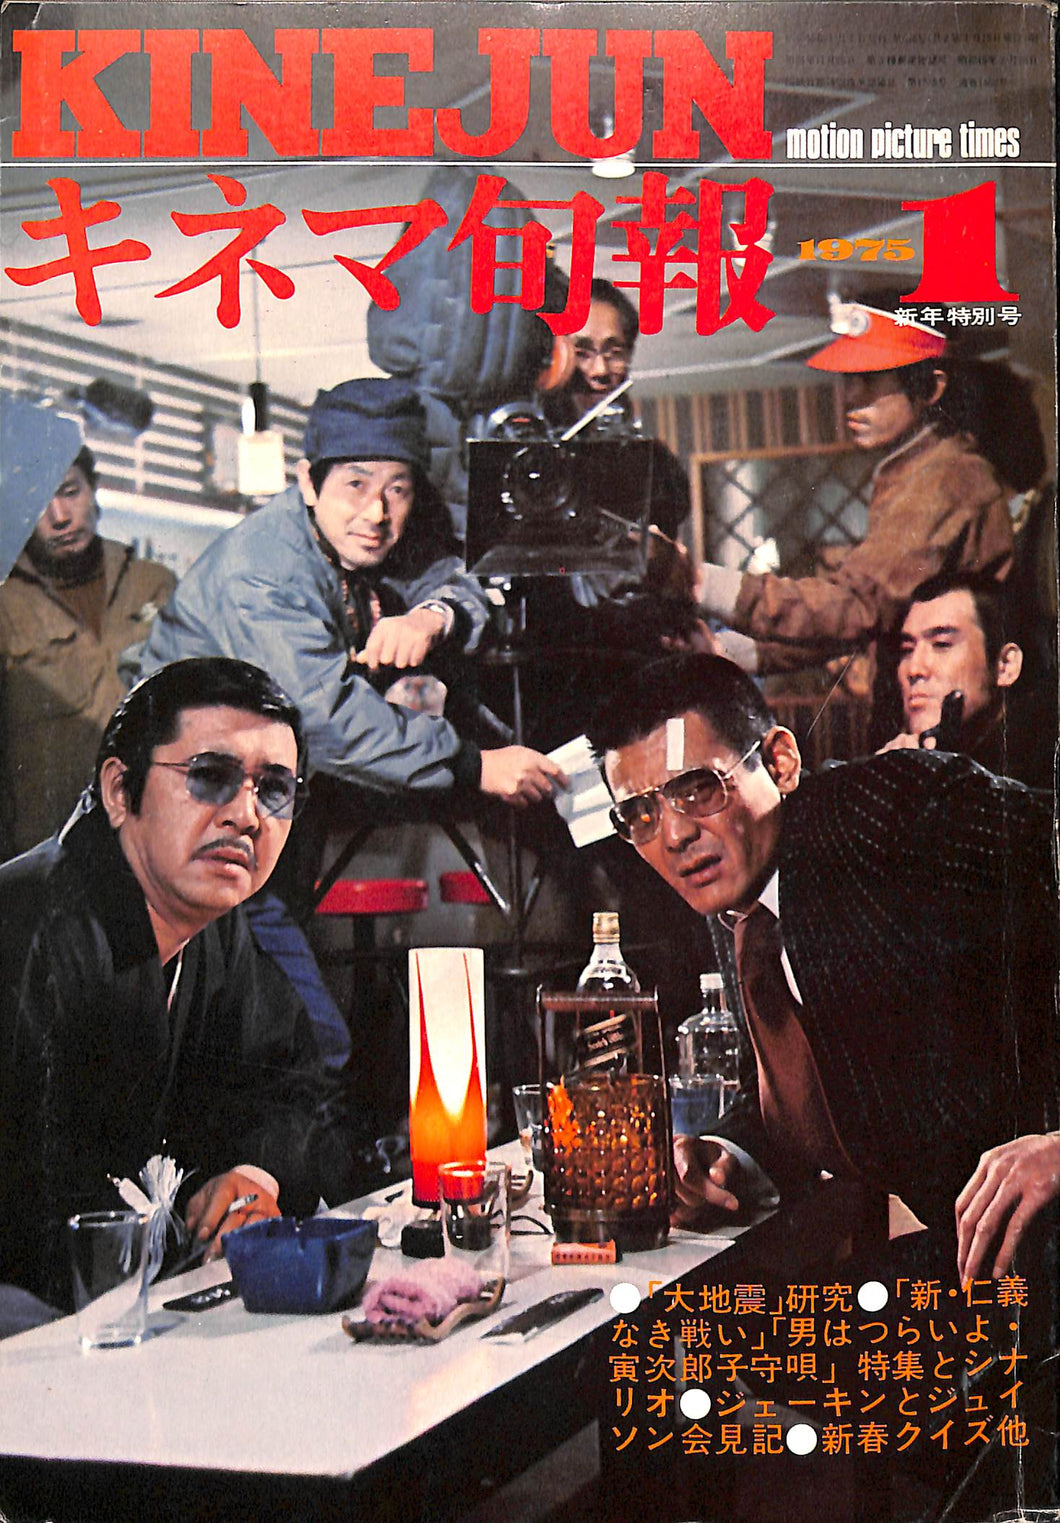 キネマ旬報 1975年 1月新年特別号 表紙の映画:新・仁義なき戦い (菅原文太/若山富三郎)